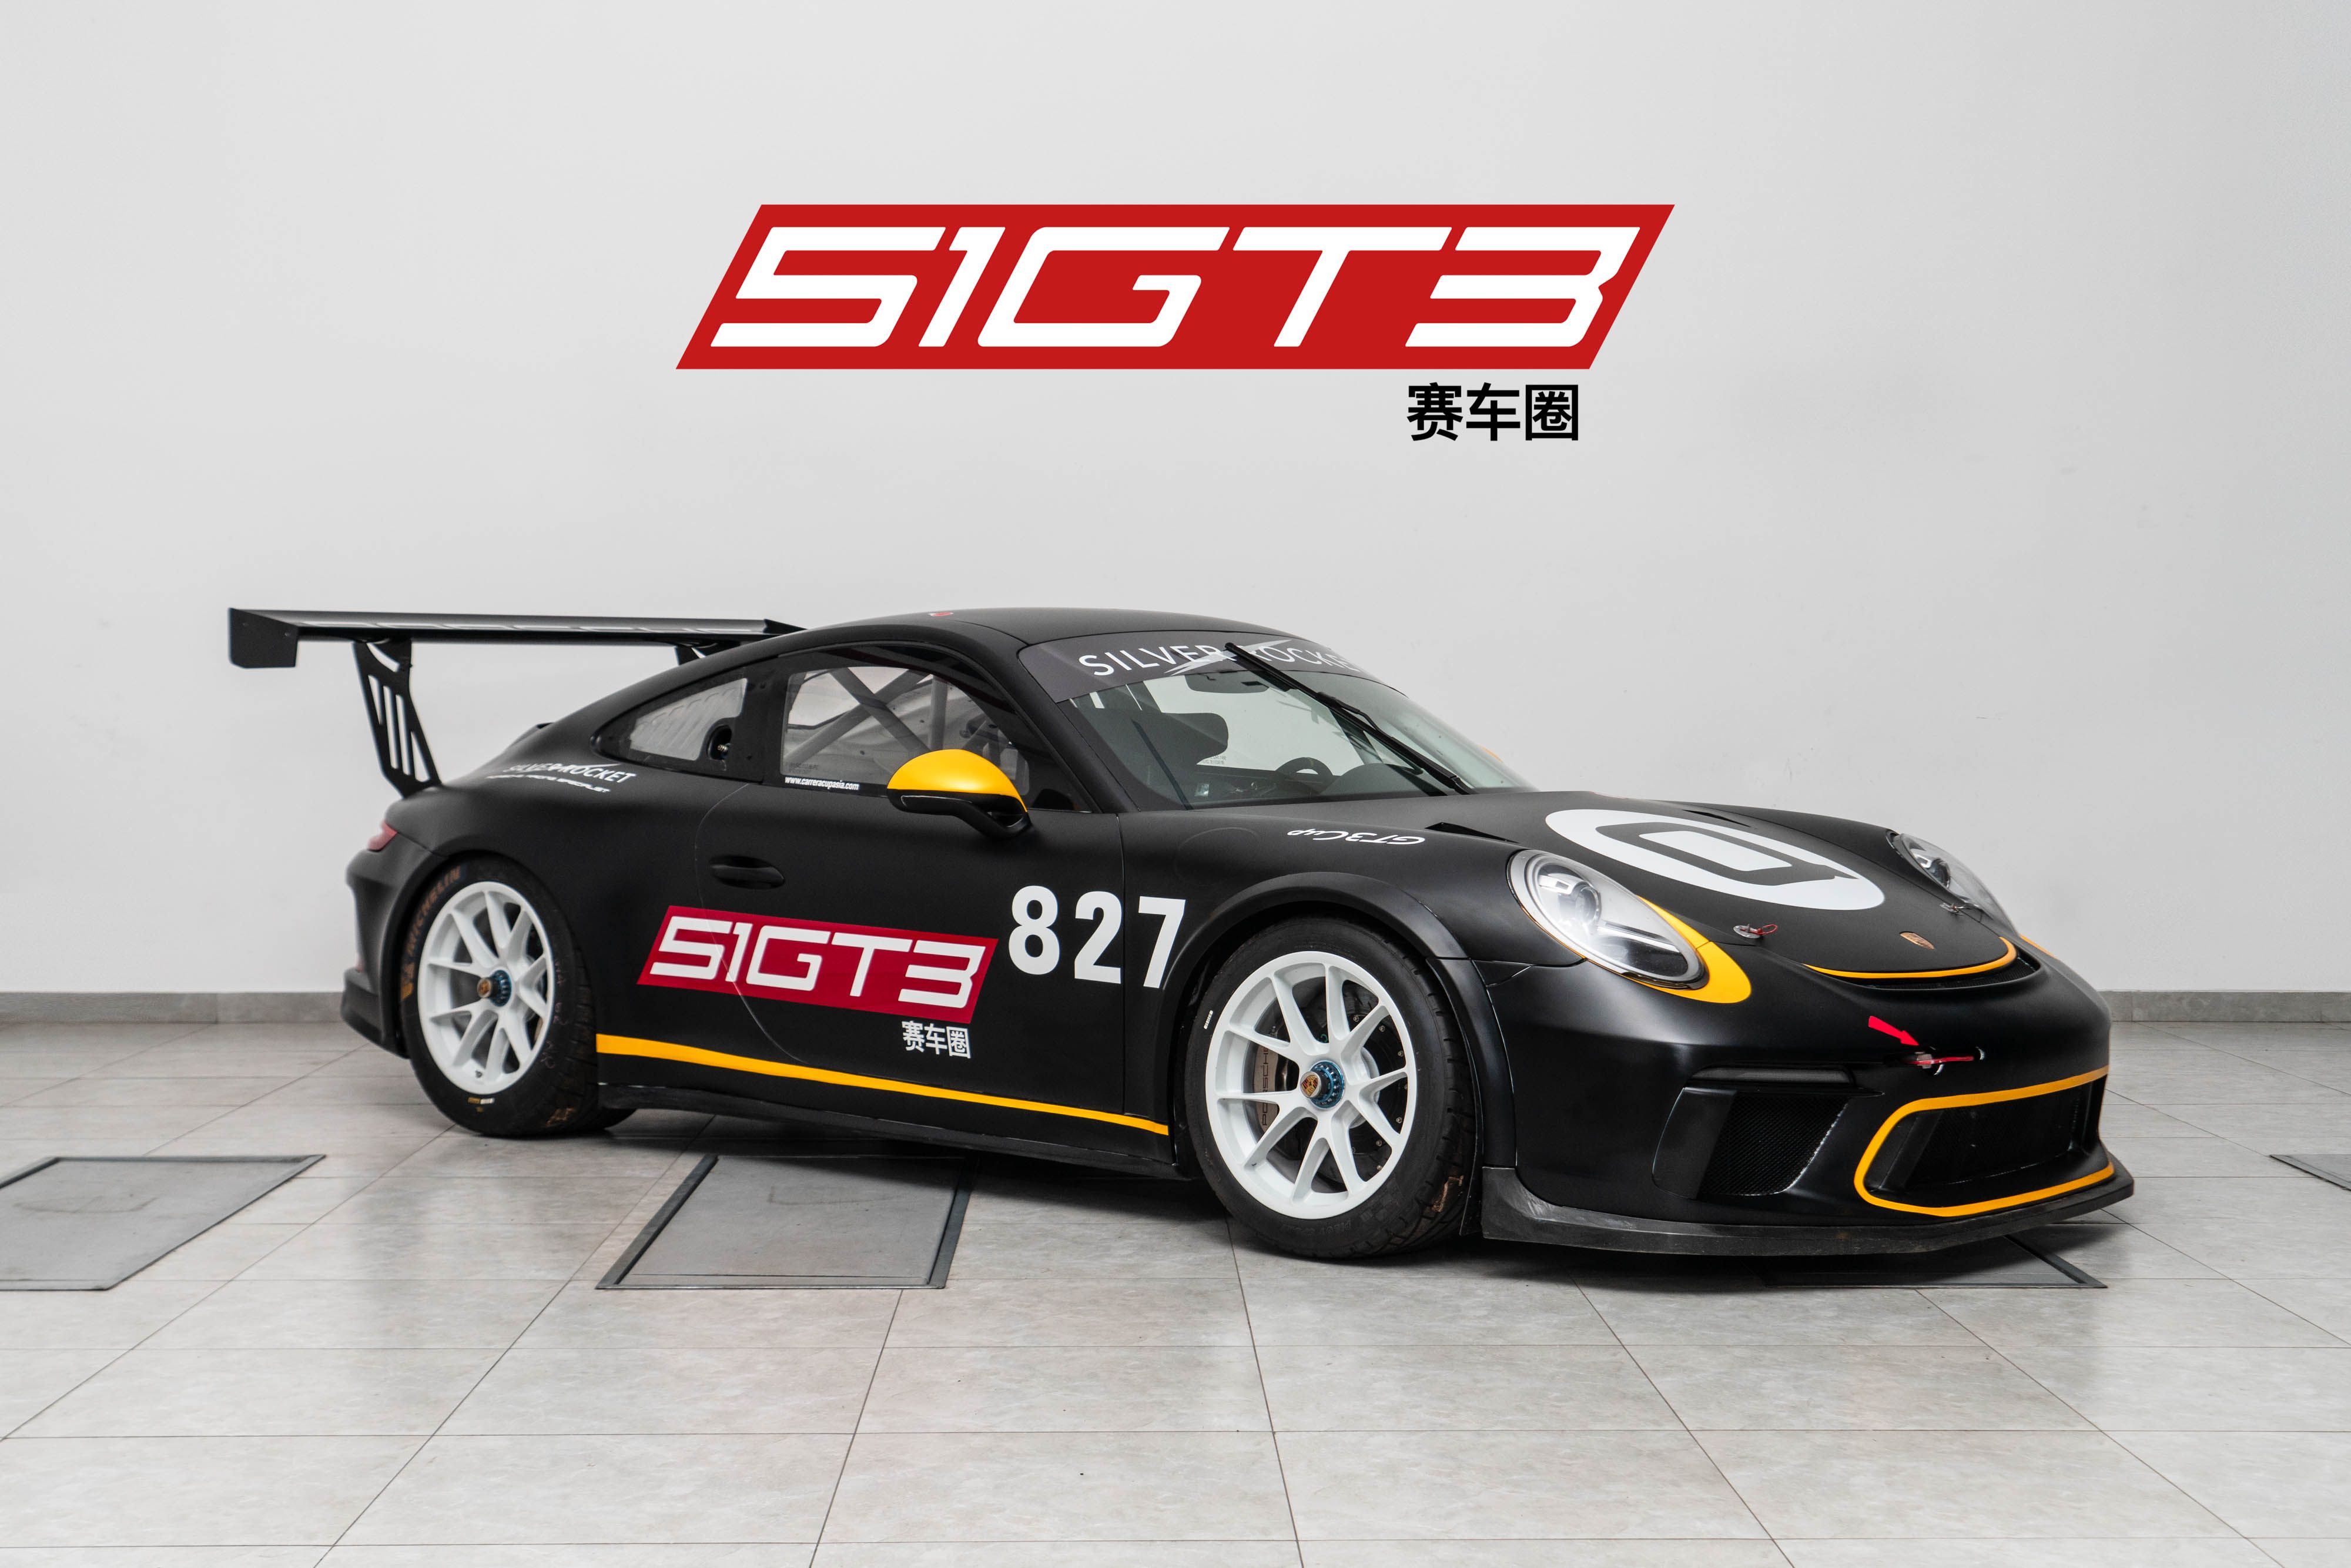 2018 保时捷911 GT3 CUP 991.2(新变速箱&无ABS)